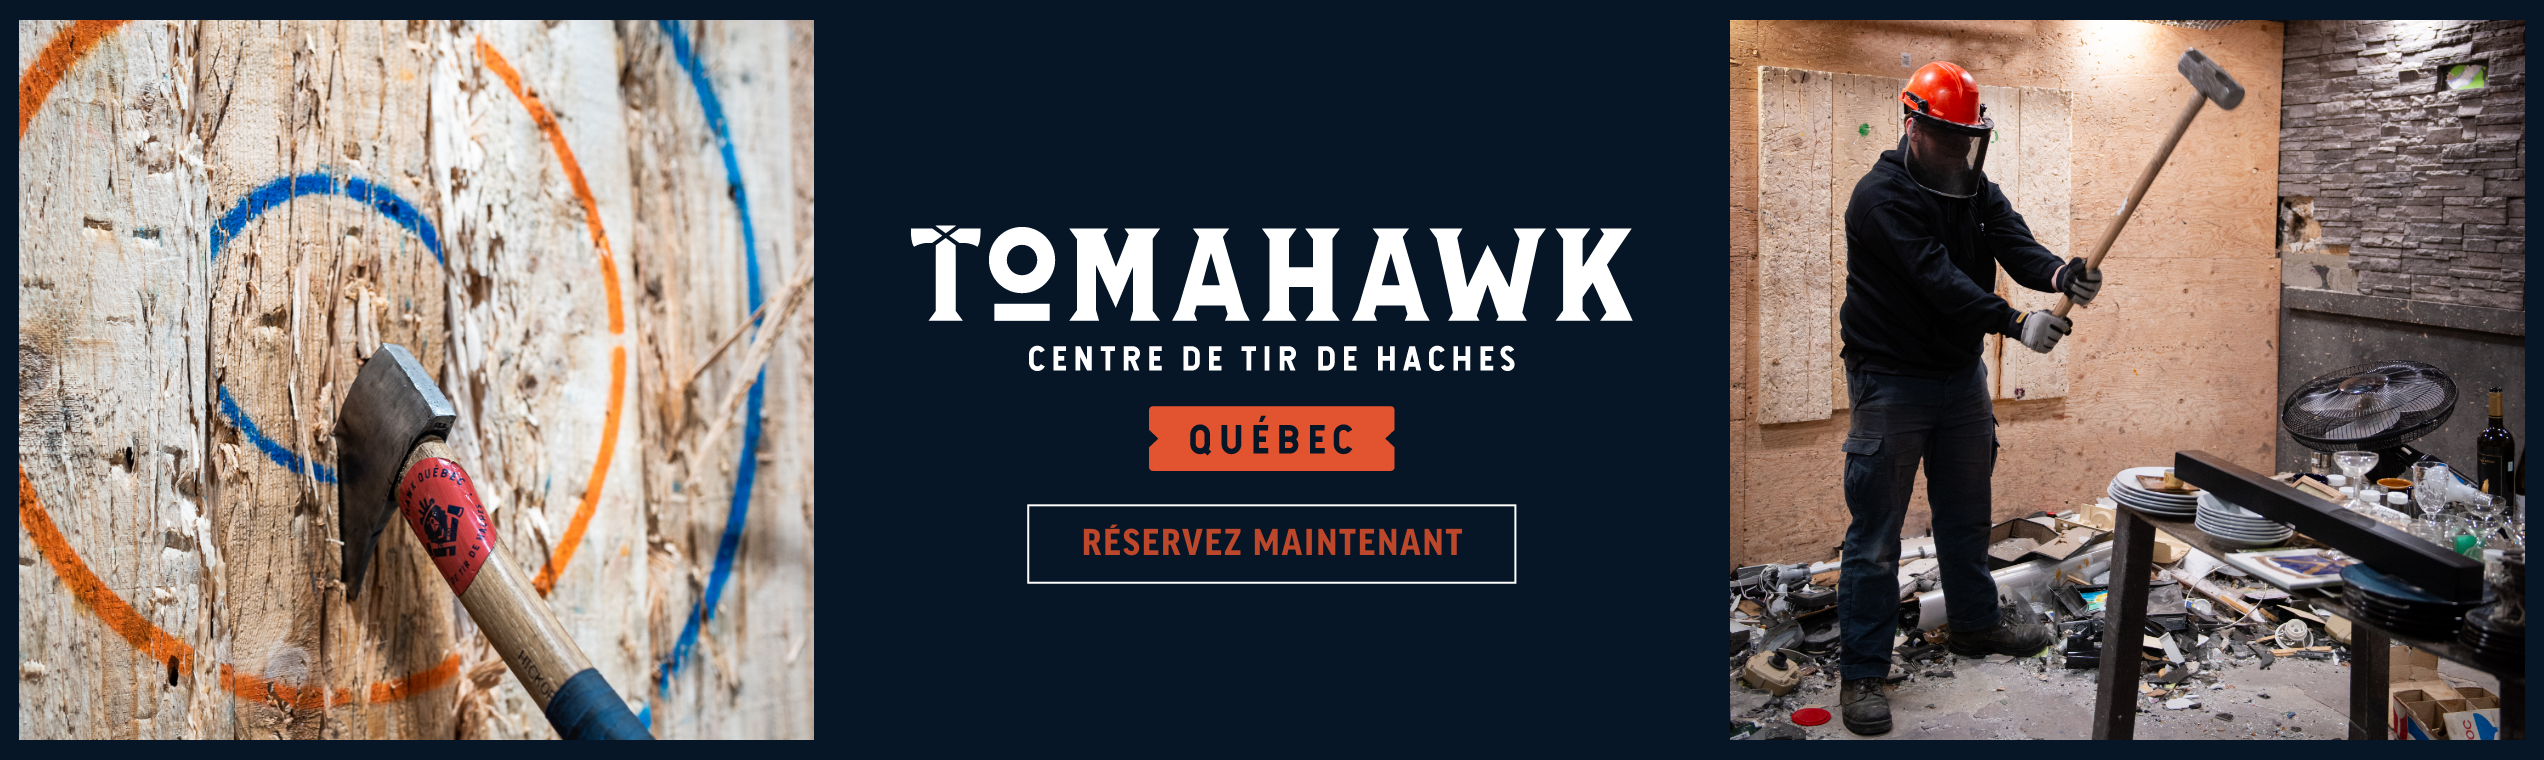 quoi-faire-tomahawk-mega-entete-2544x760 (1)